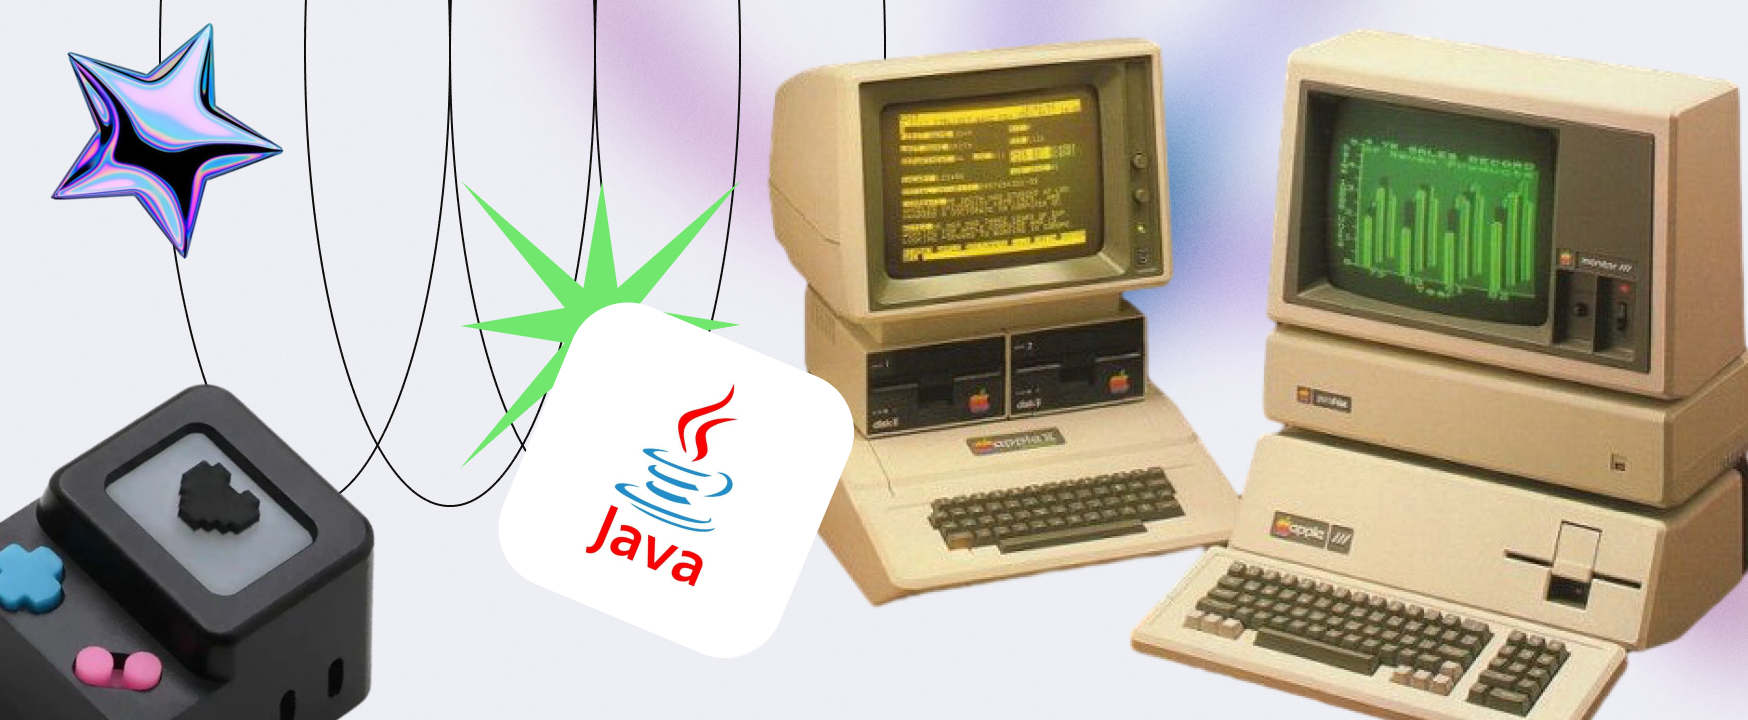 IDE для Java